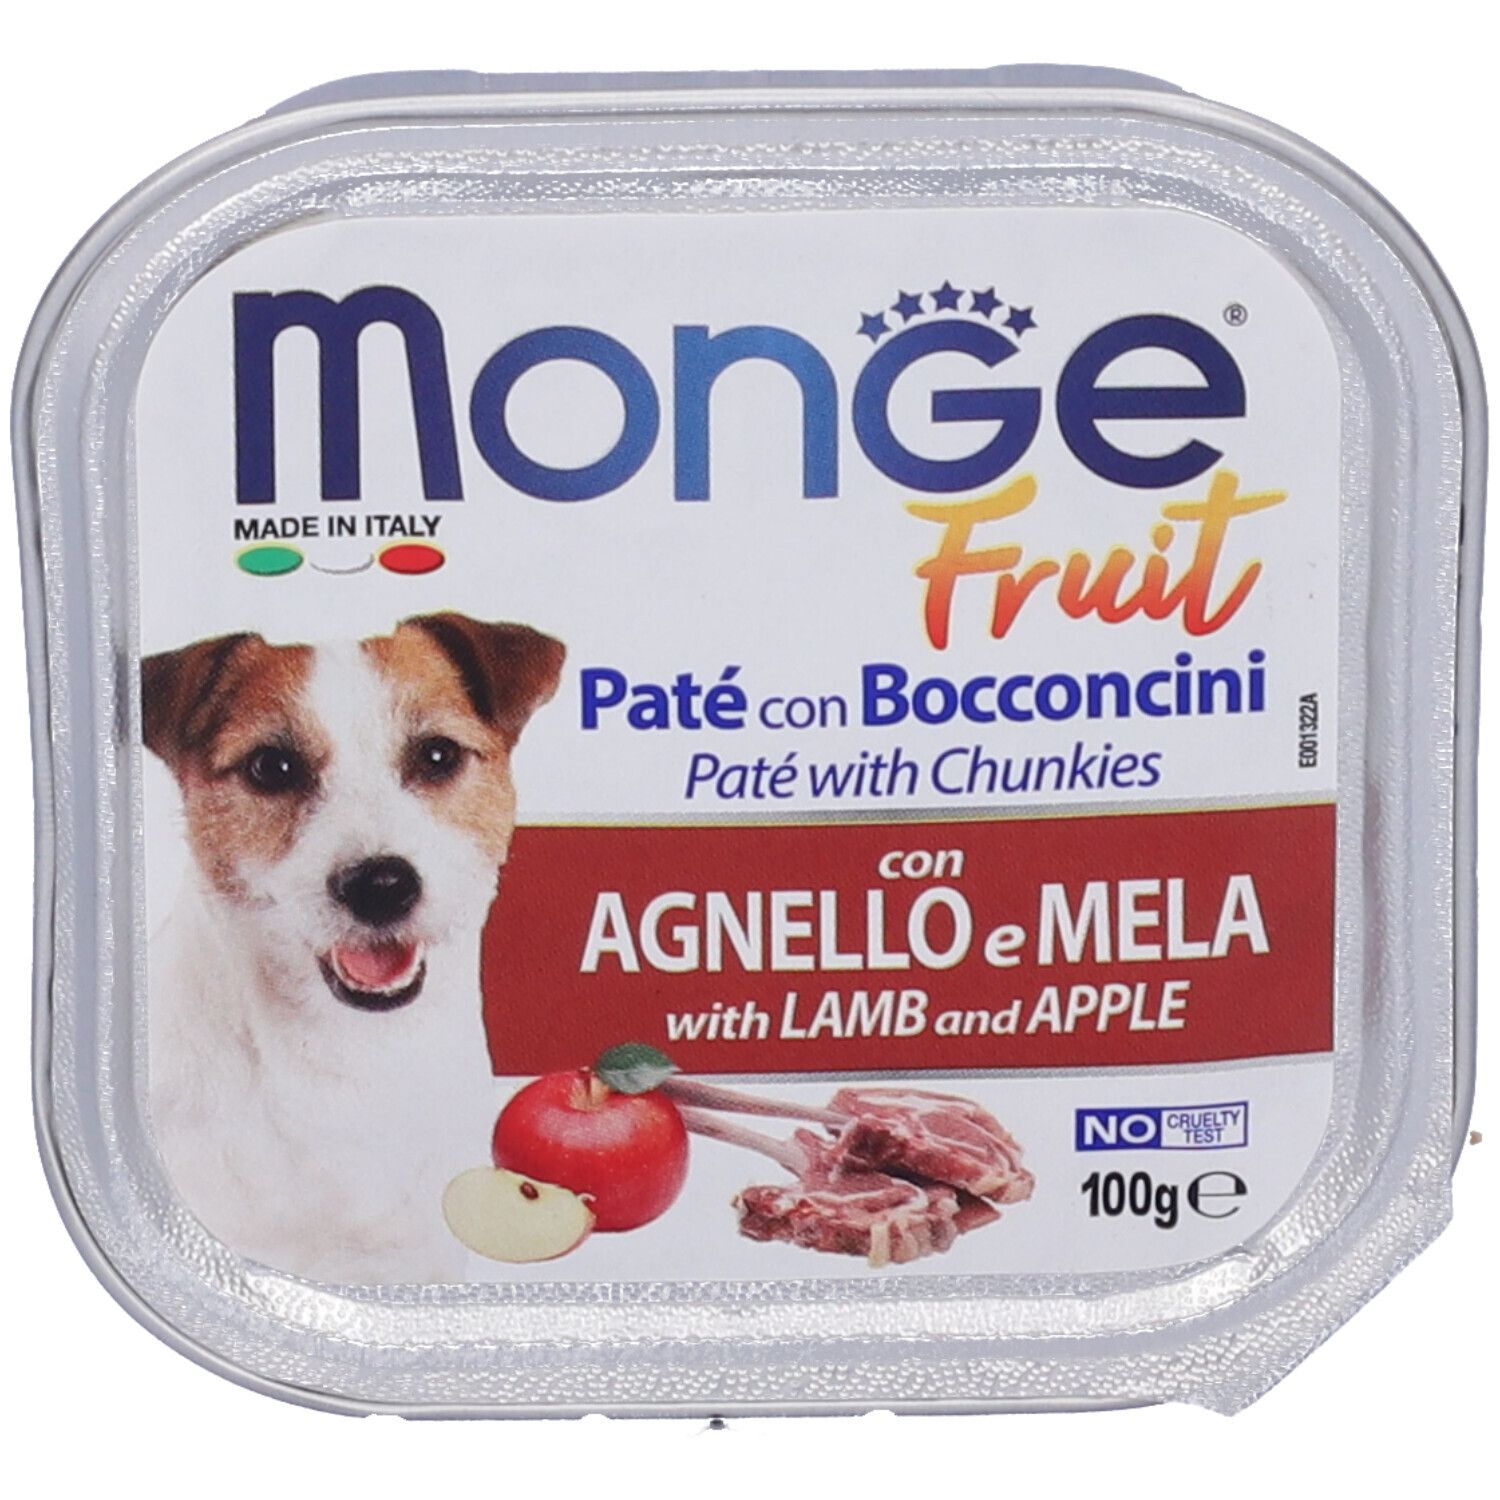 Image of Monge Fruit Cane Agnello&Mela